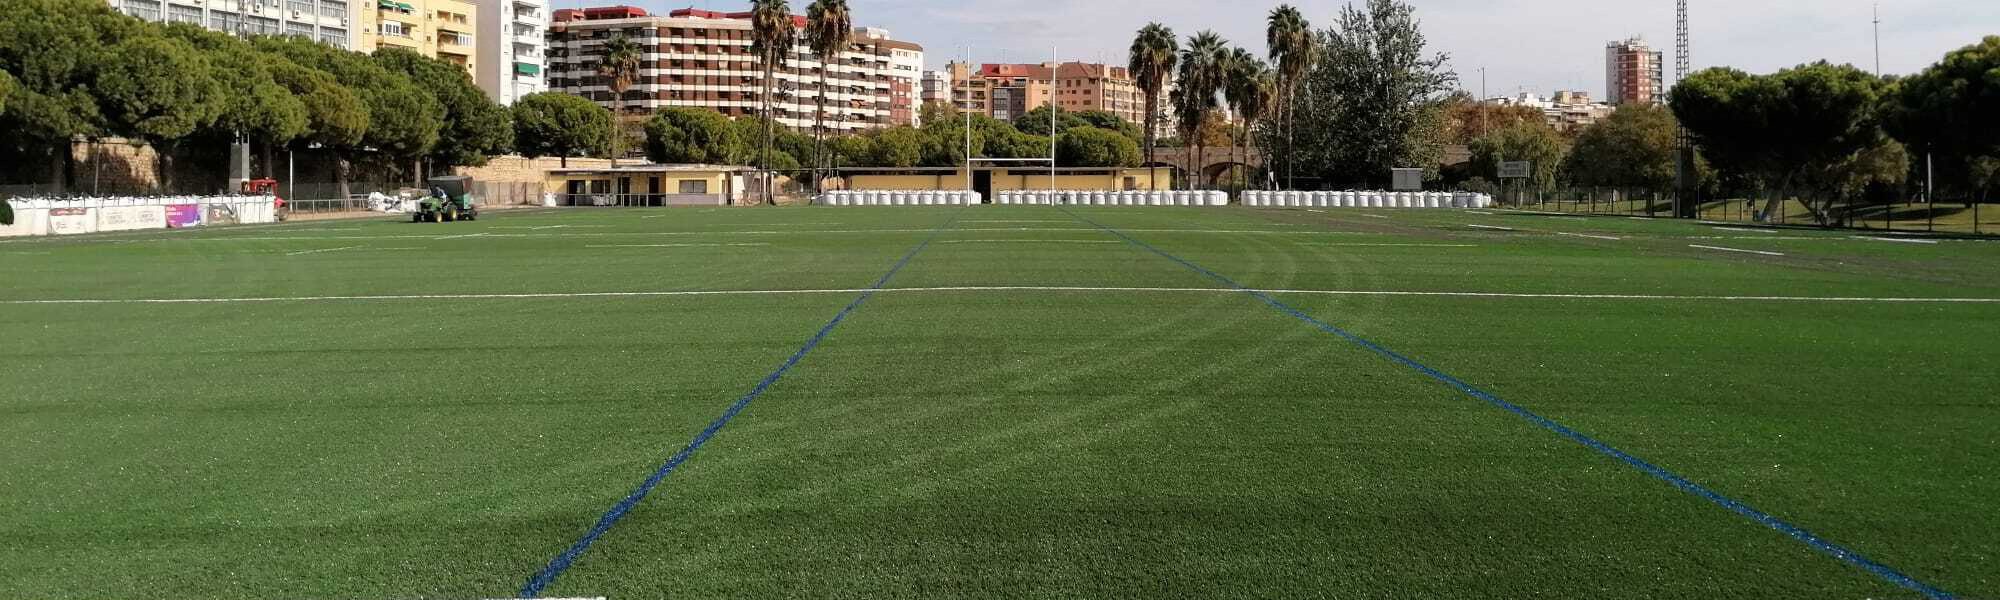 Campo de rugby del Tramo V del cauce del río Turia, en Valencia, renovado con césped DUAL de Mondo con subbase elástica.